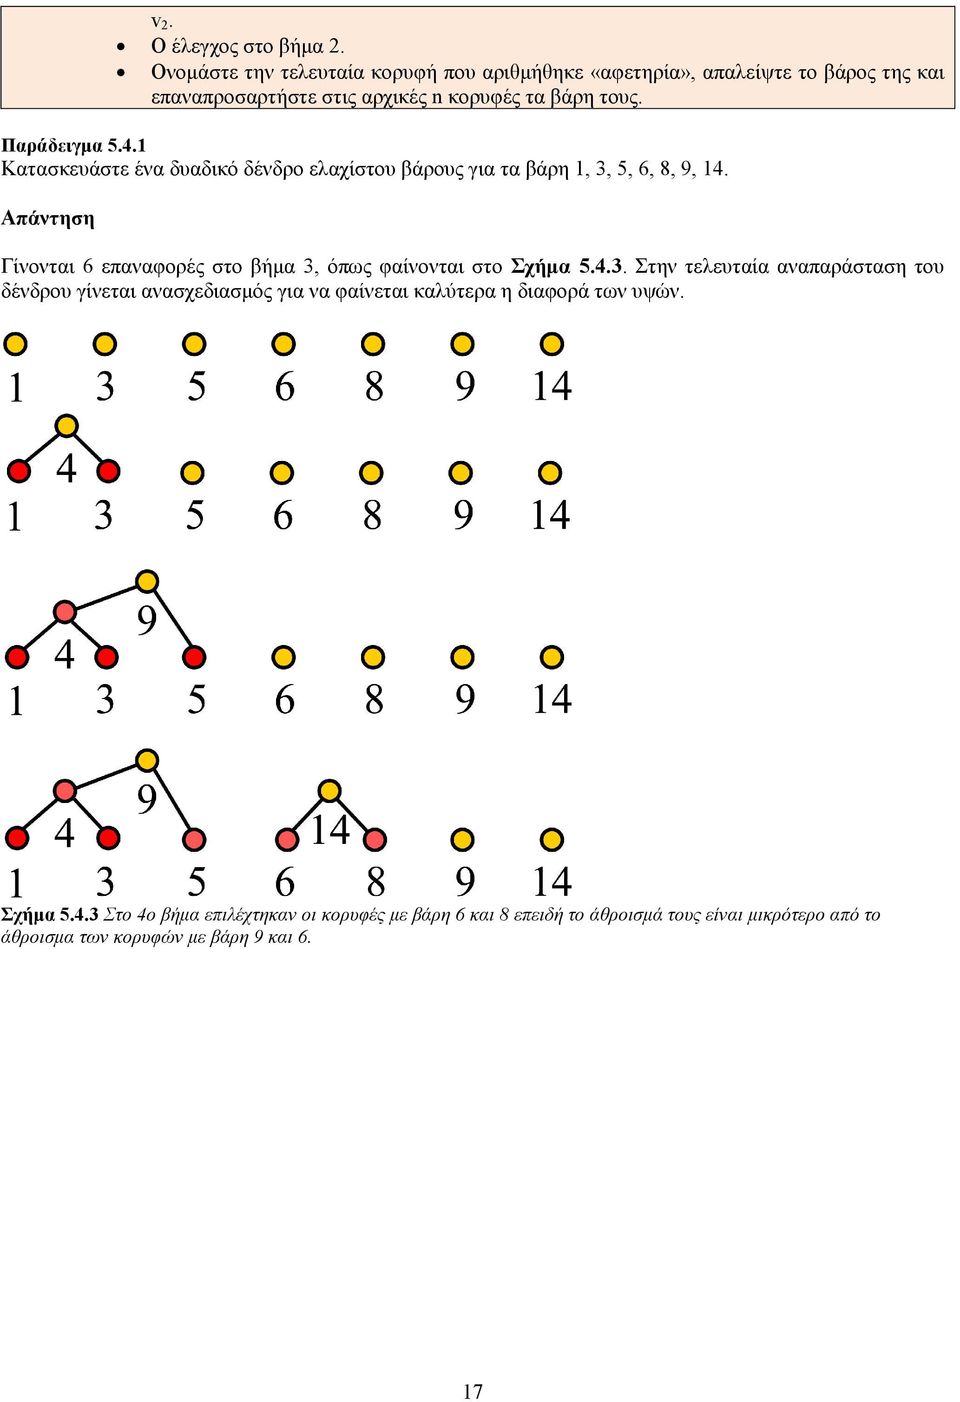 Παράδειγμα 5.4.1 Κατασκευάστε ένα δυαδικό δένδρο ελαχίστου βάρους για τα βάρη 1, 3, 5, 6, 8, 9, 14.